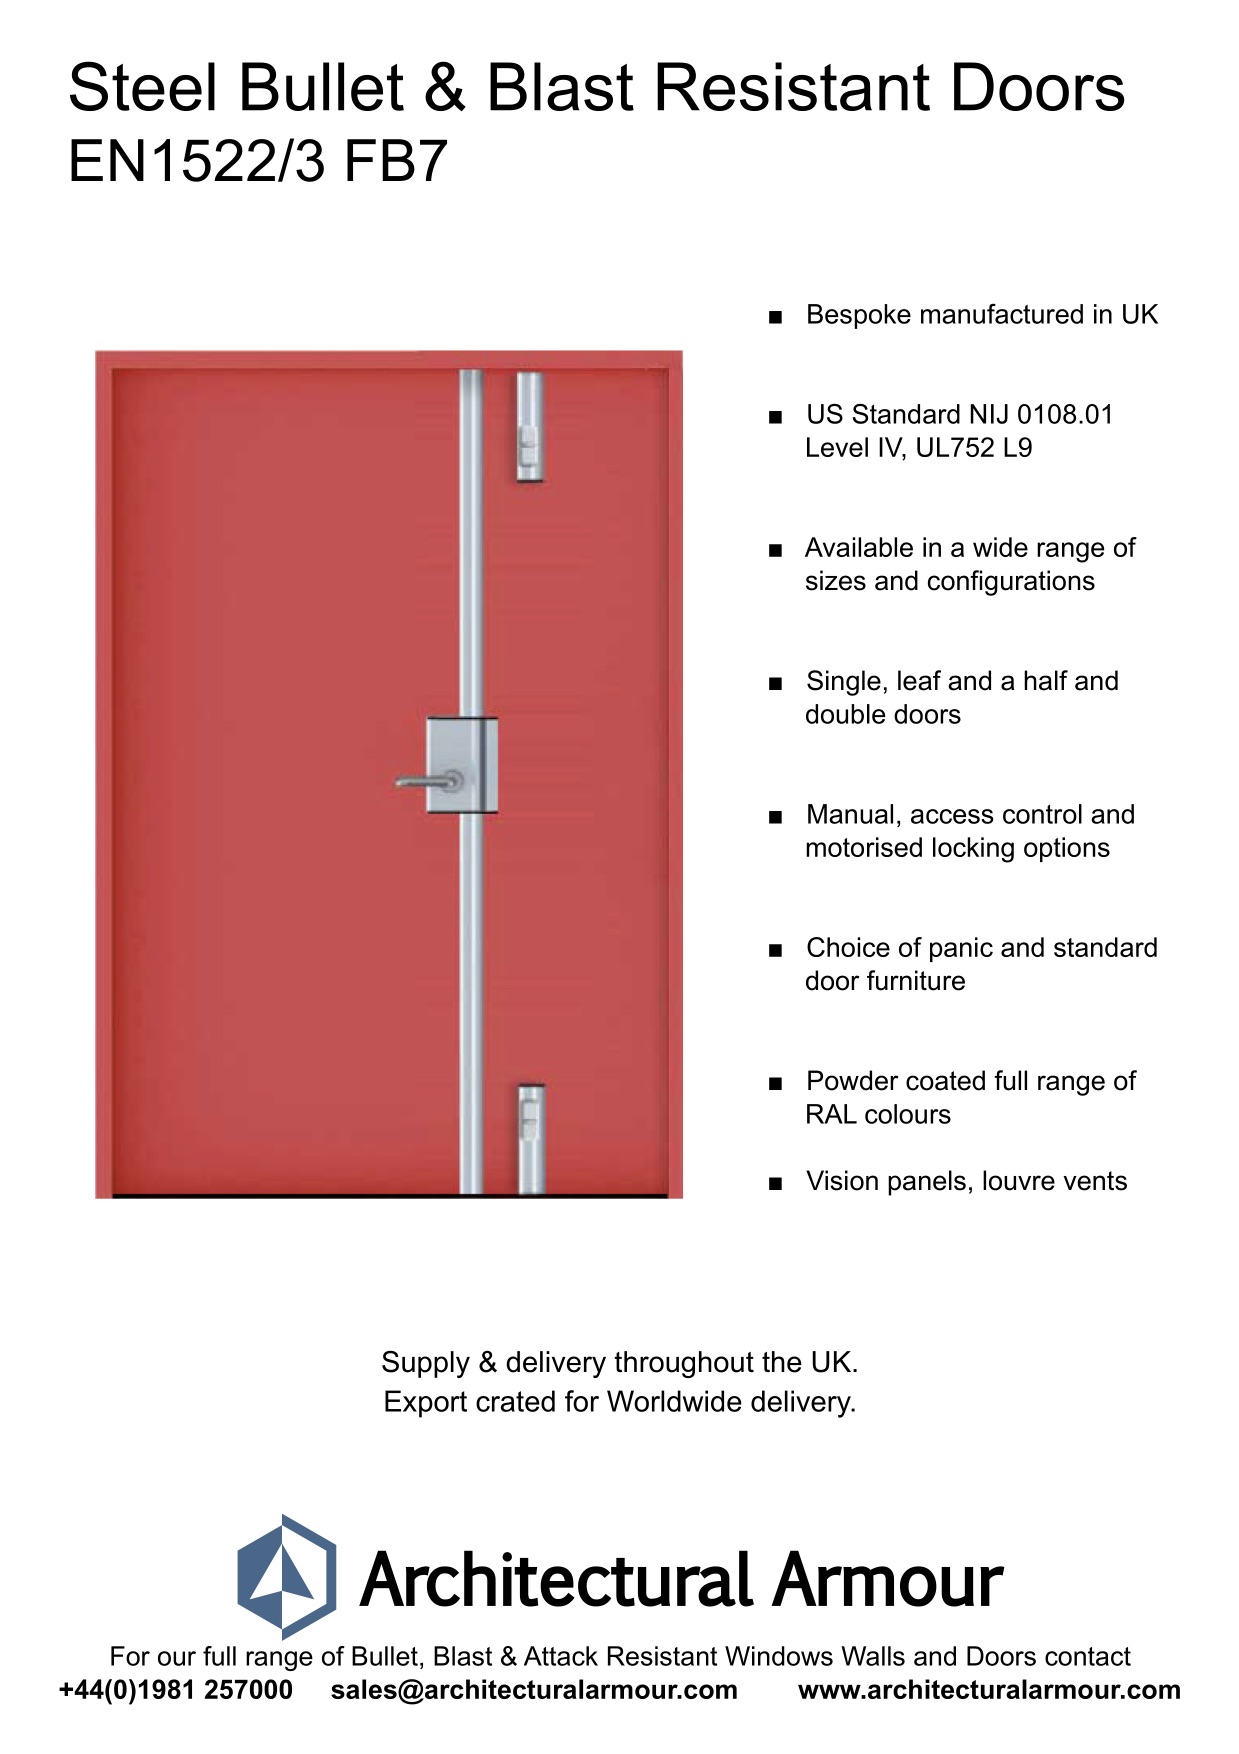 Blast-and-Ballistic-Resistant-metal-Doors-EN1522-3-FB7